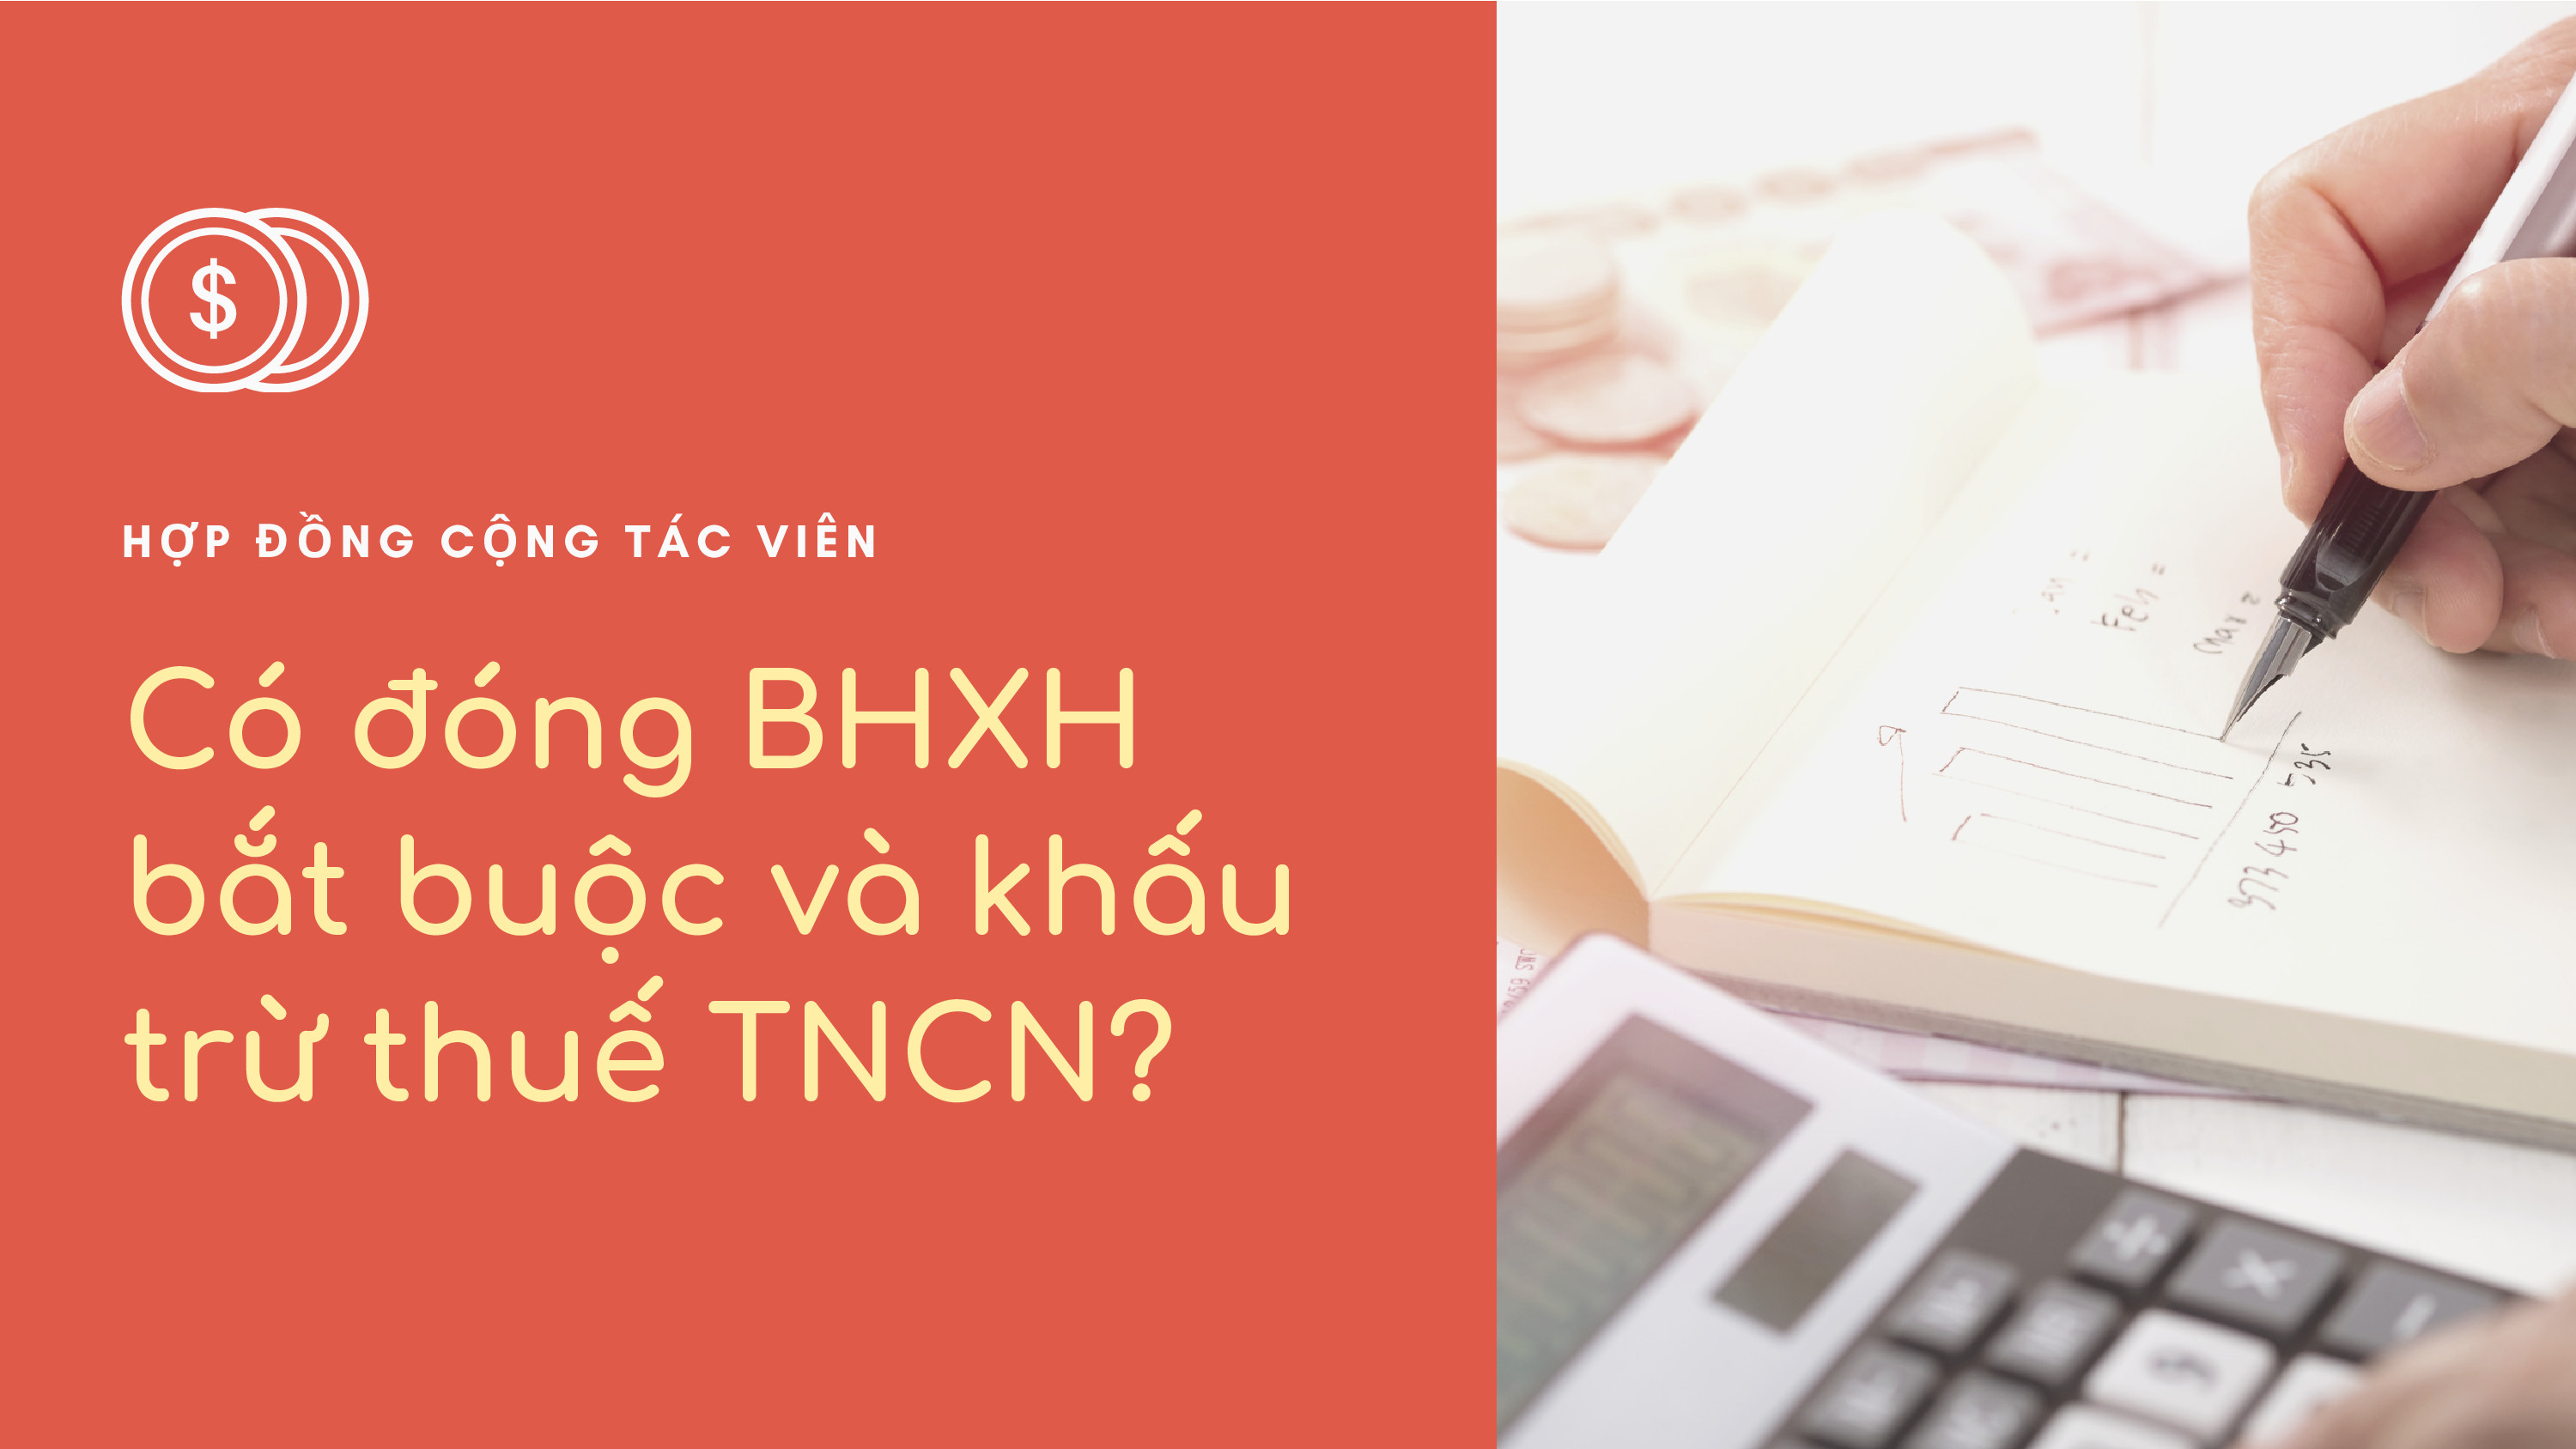 Hợp đồng cộng tác viên có khấu trừ thuế TNCN và đóng BHXH bắt buộc?